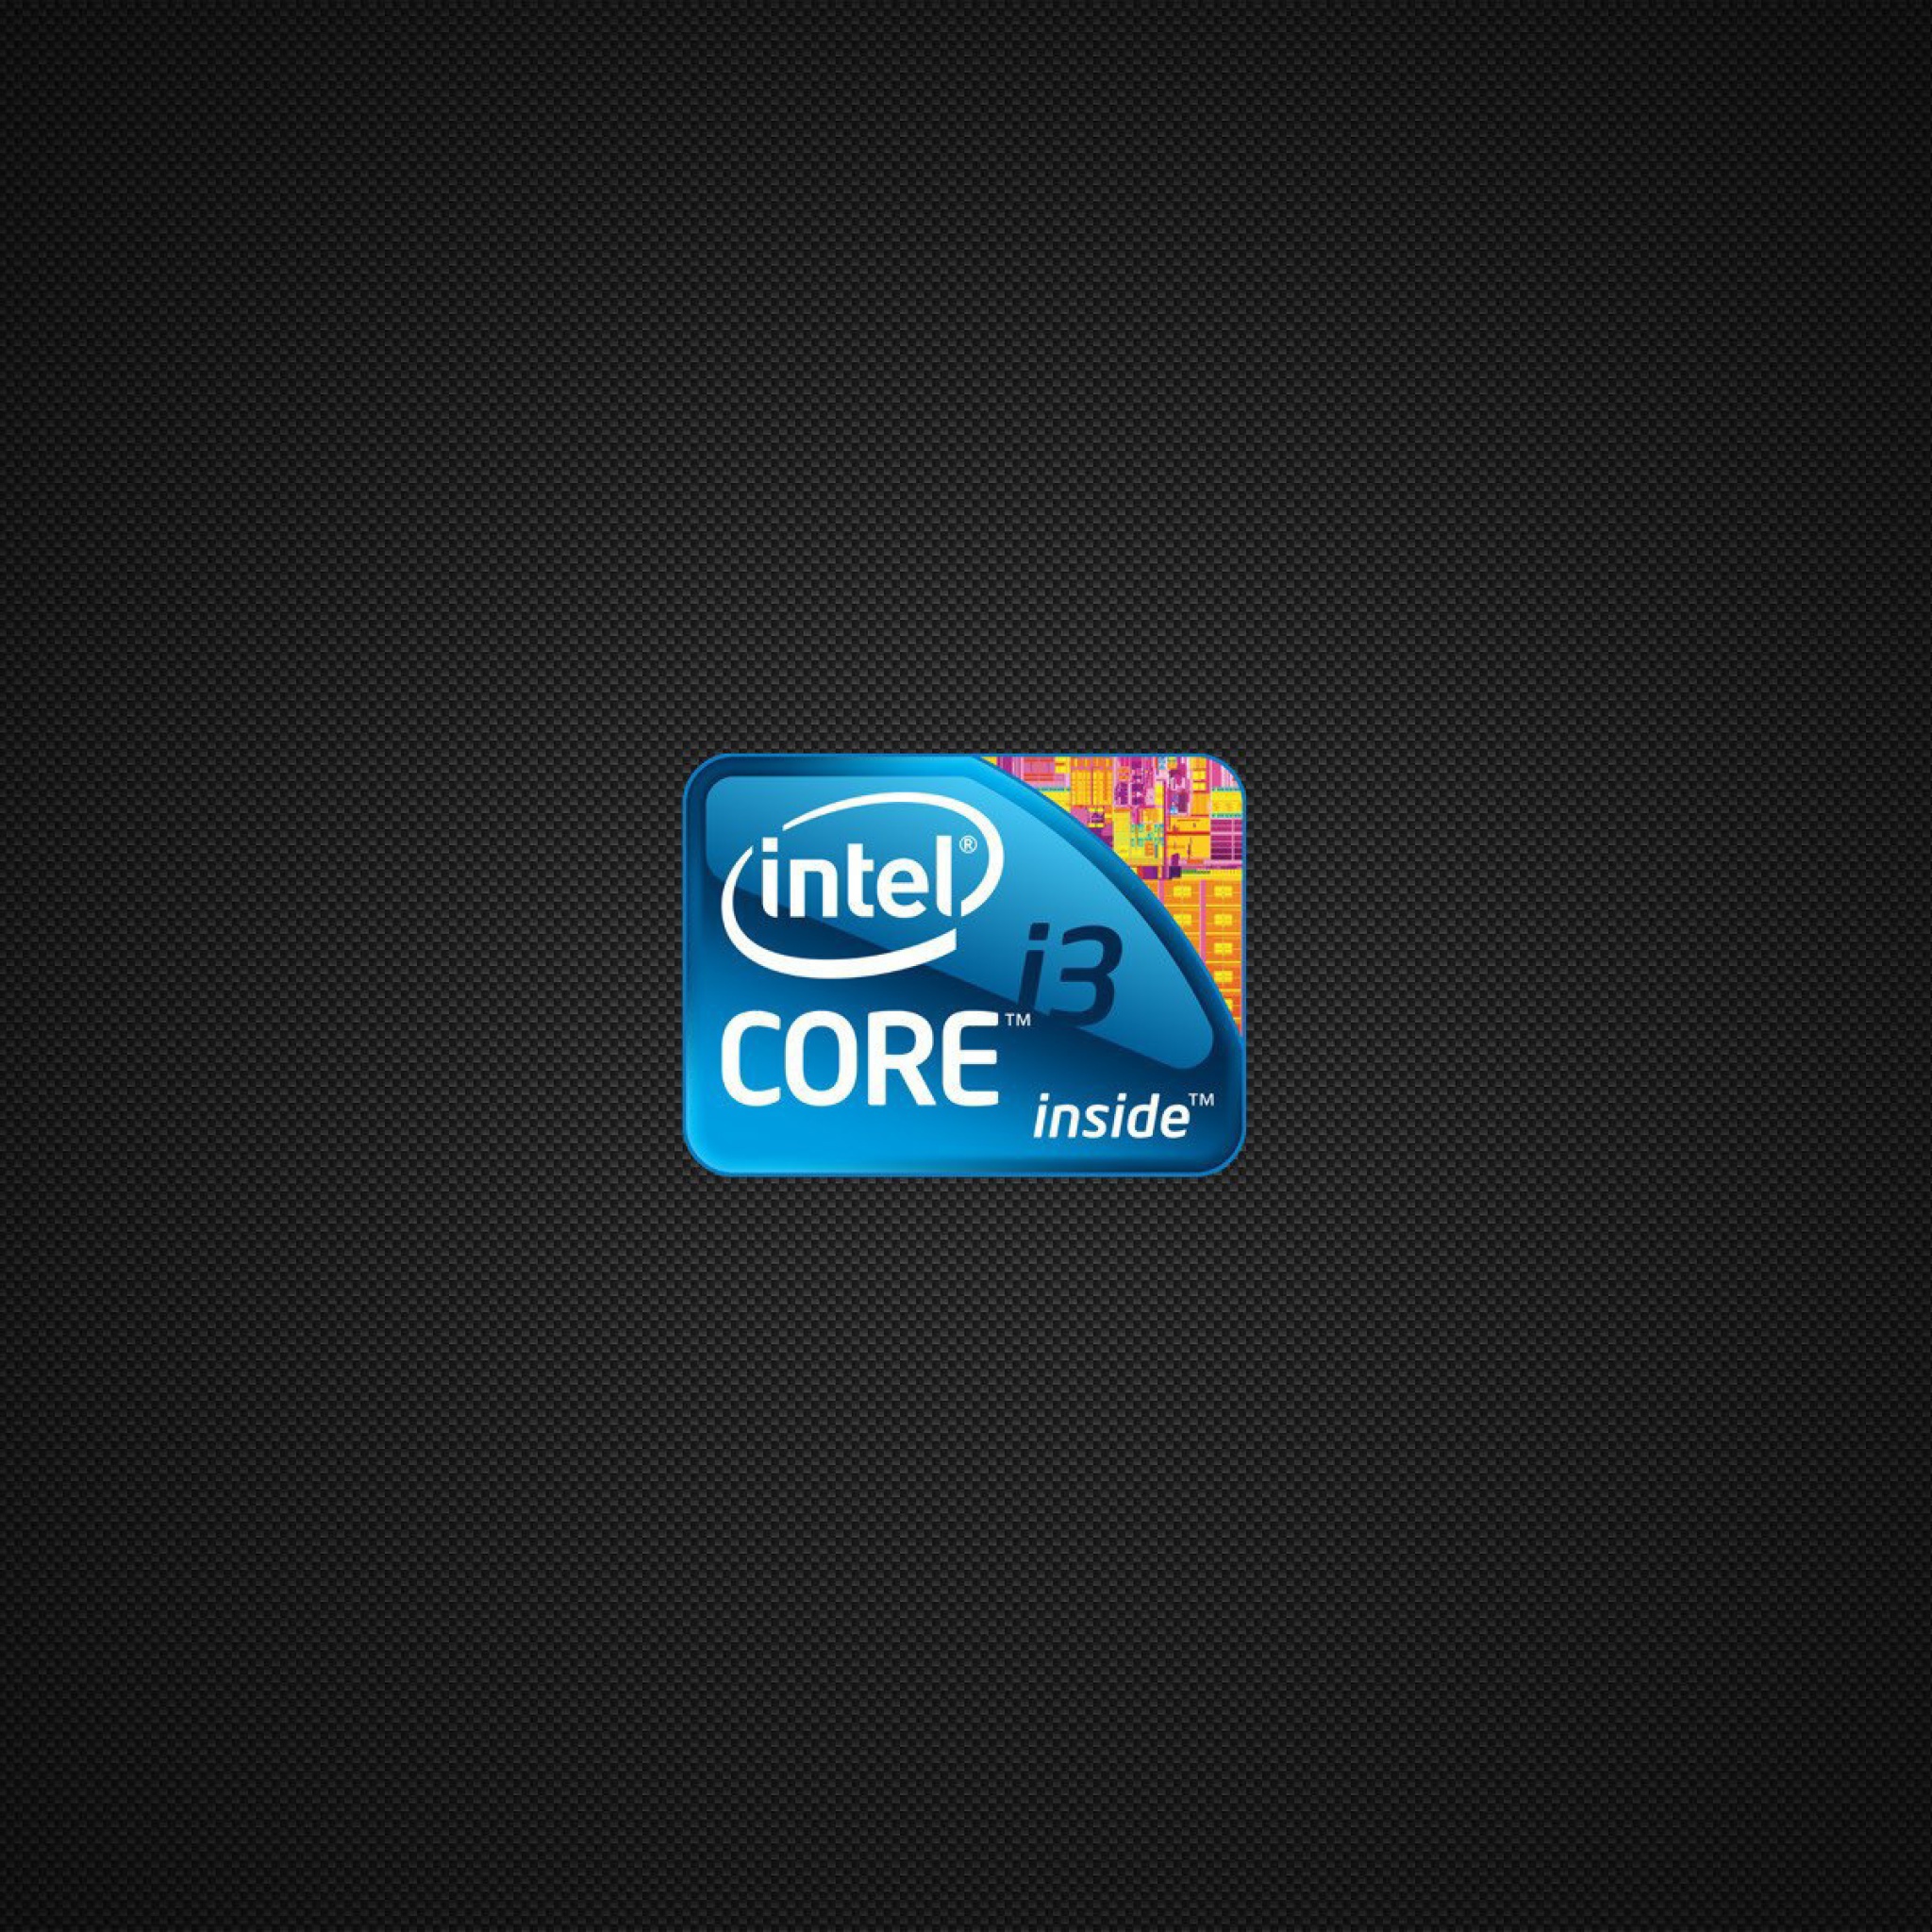 Intel Core i3 Processor wallpaper 2048x2048